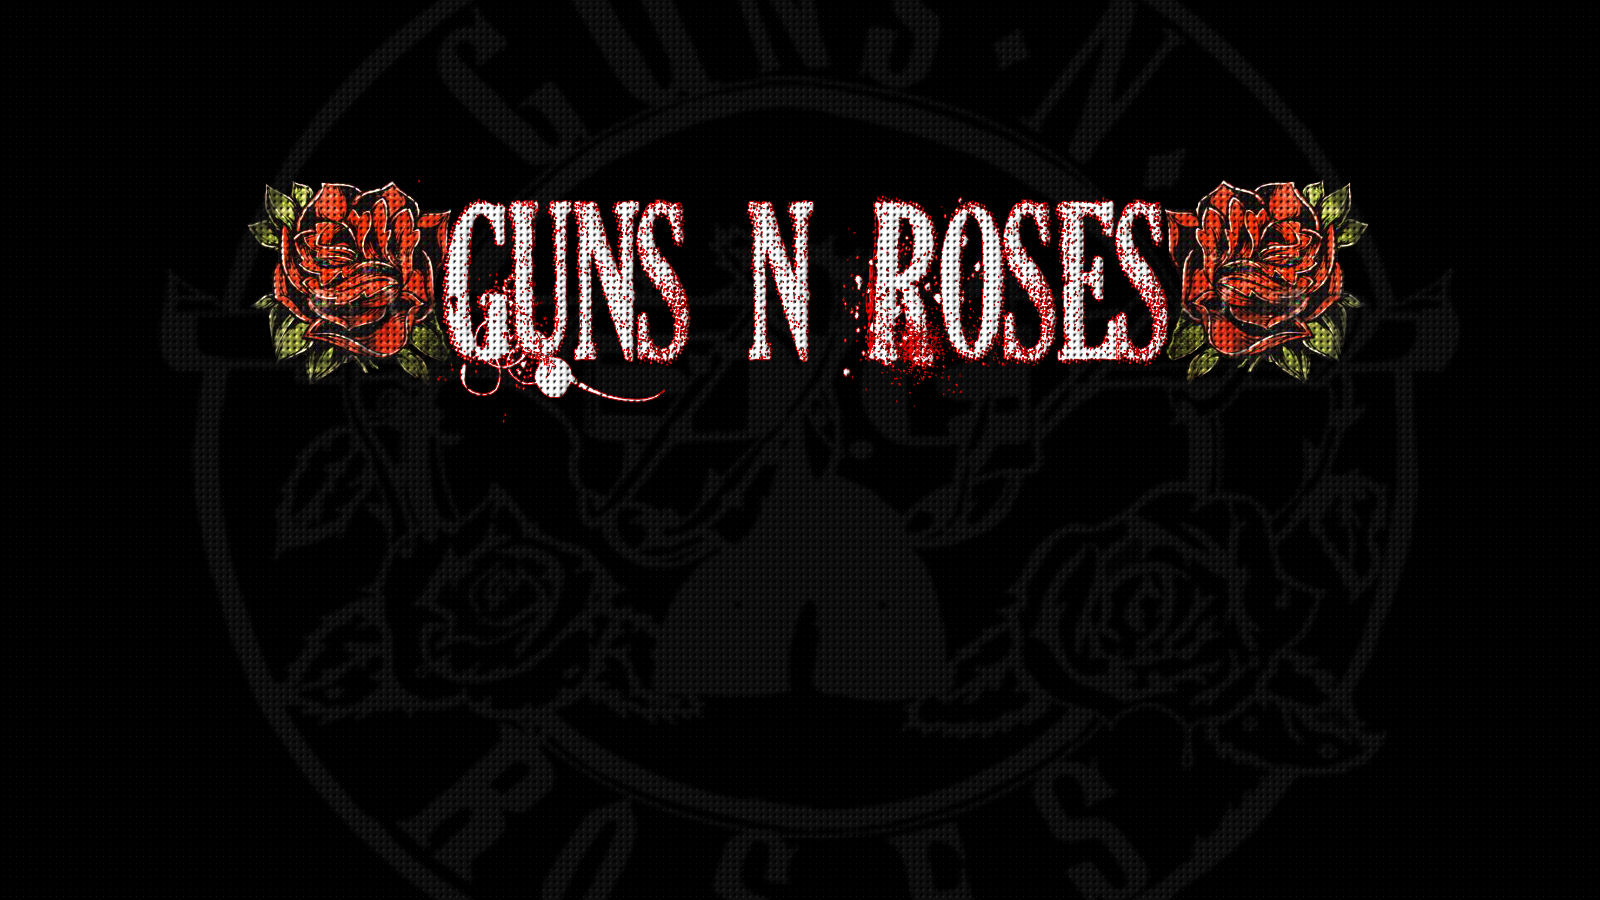 Guns n roses wallpaper